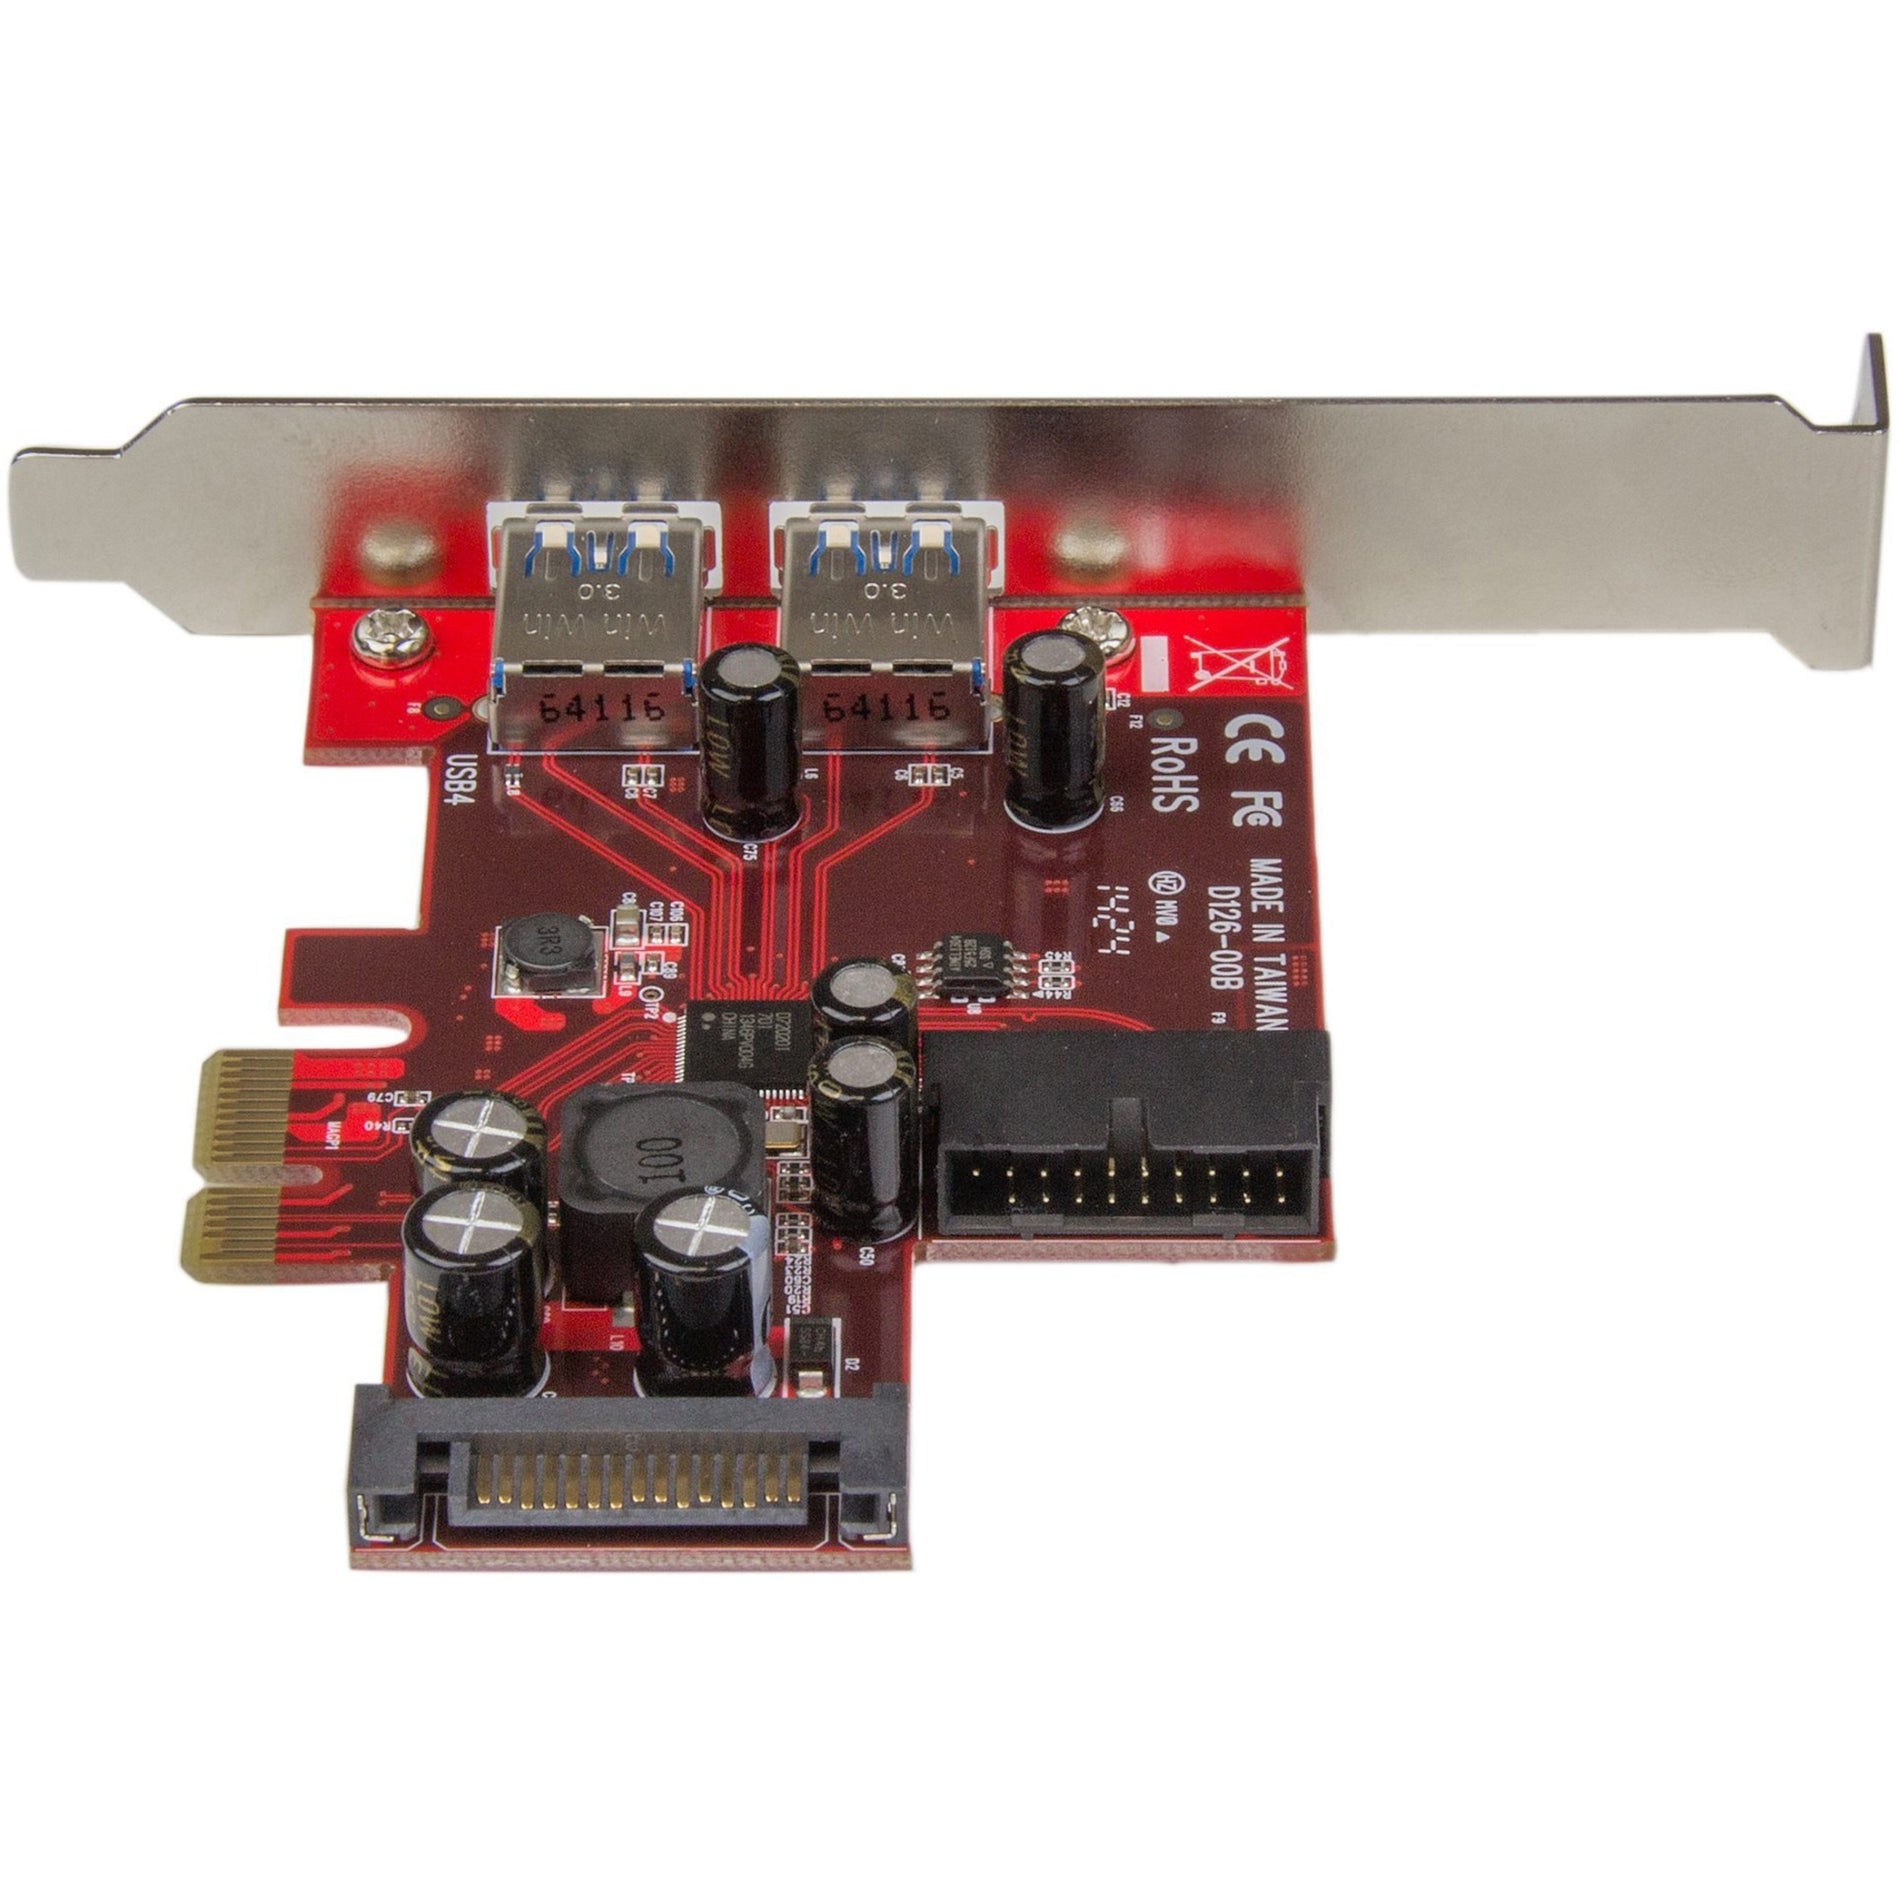 StarTech.com PEXUSB3S2EI 4-port PCI Express USB 3.0 Card - 2 External, 2 Internal - SATA Power, TAA Compliant